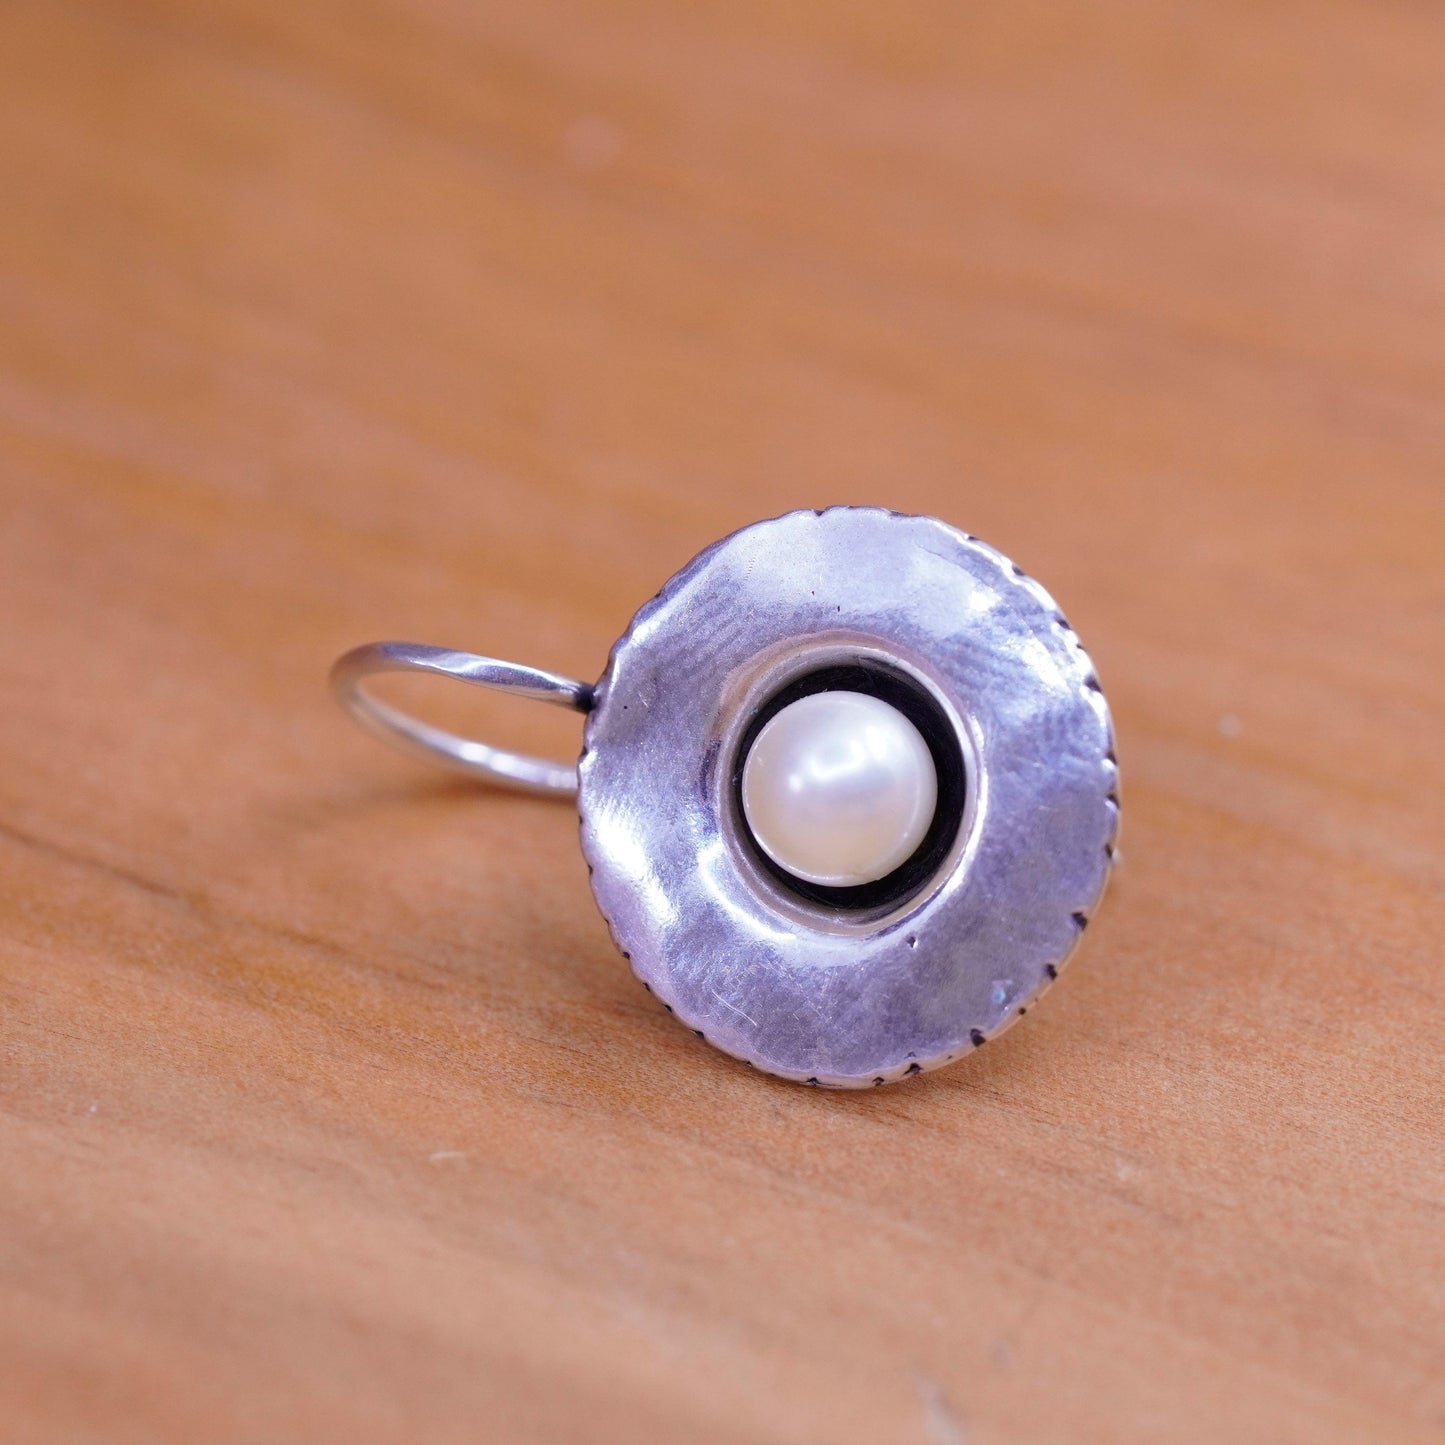 Vintage Israel didae shablool Sterling 925 silver handmade earrings with pearl